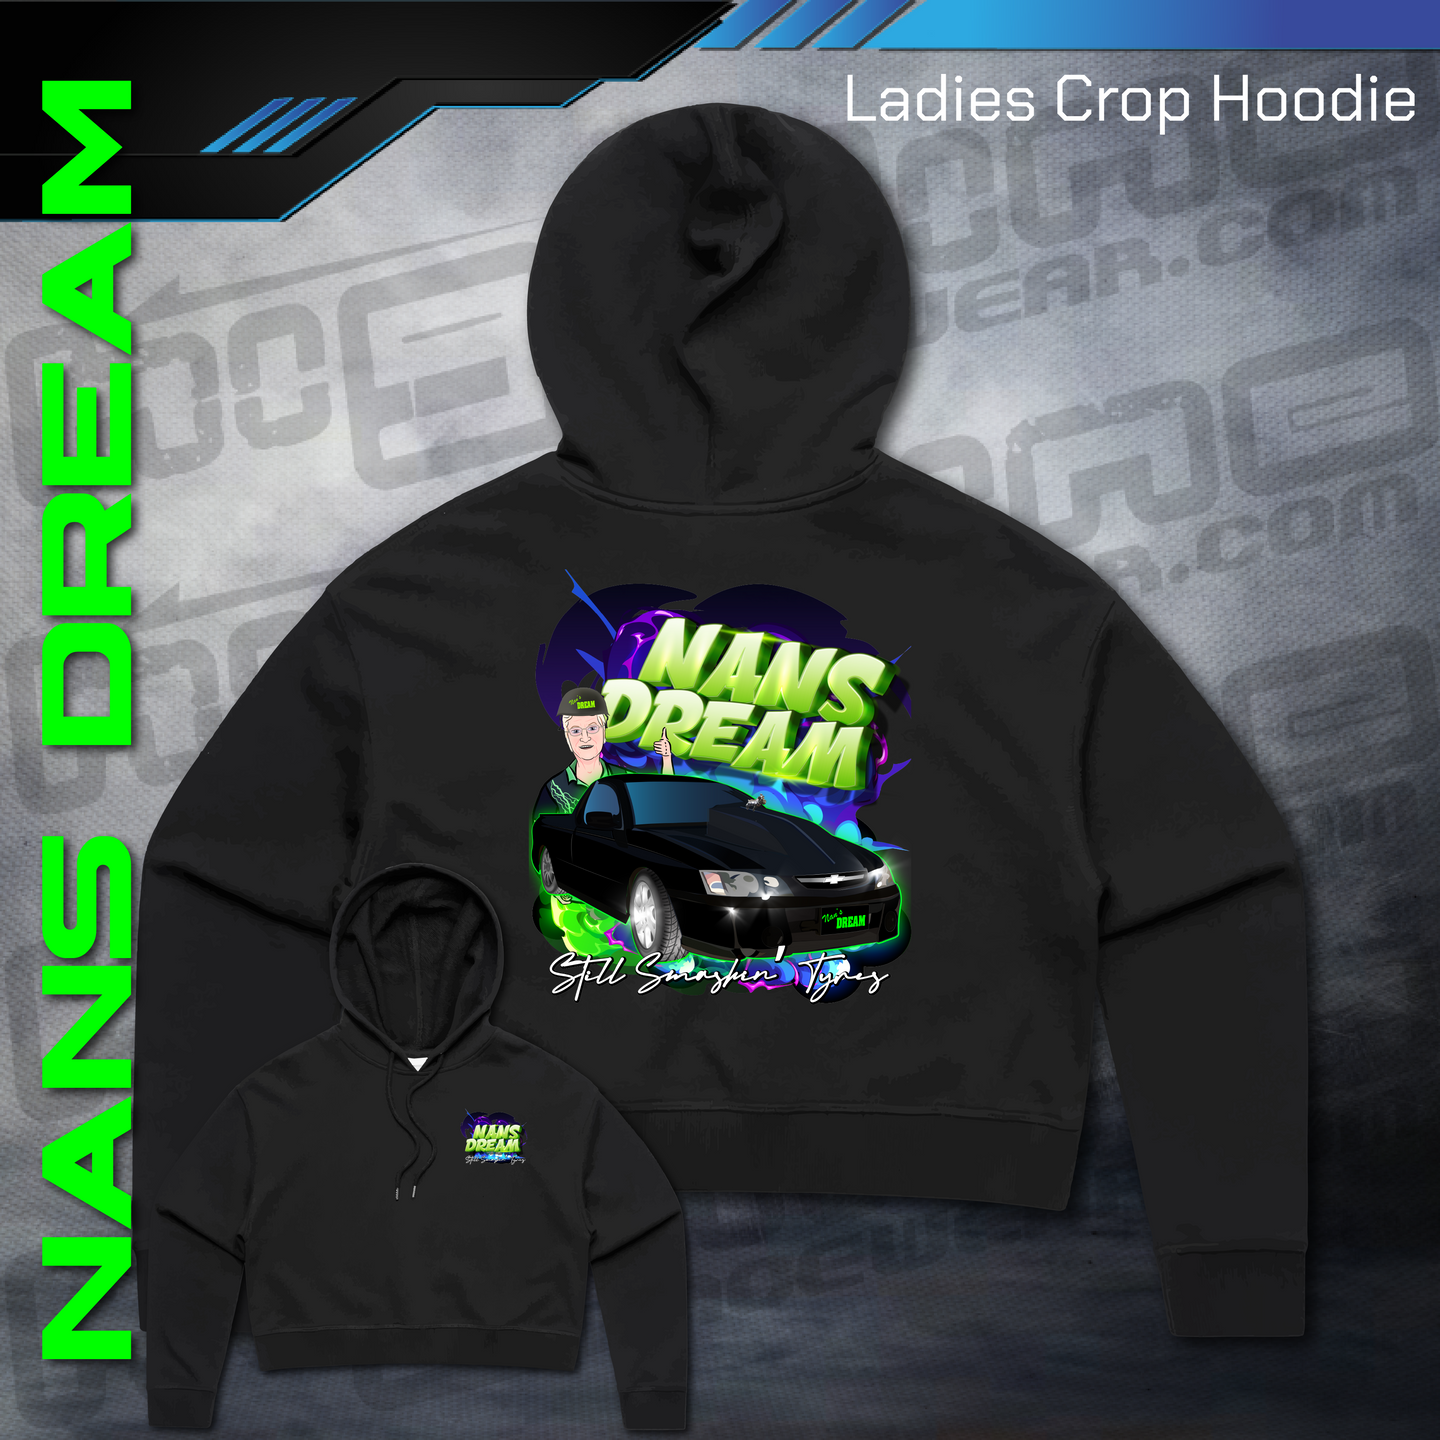 Ladies Crop Hoodie -  Nans Dream